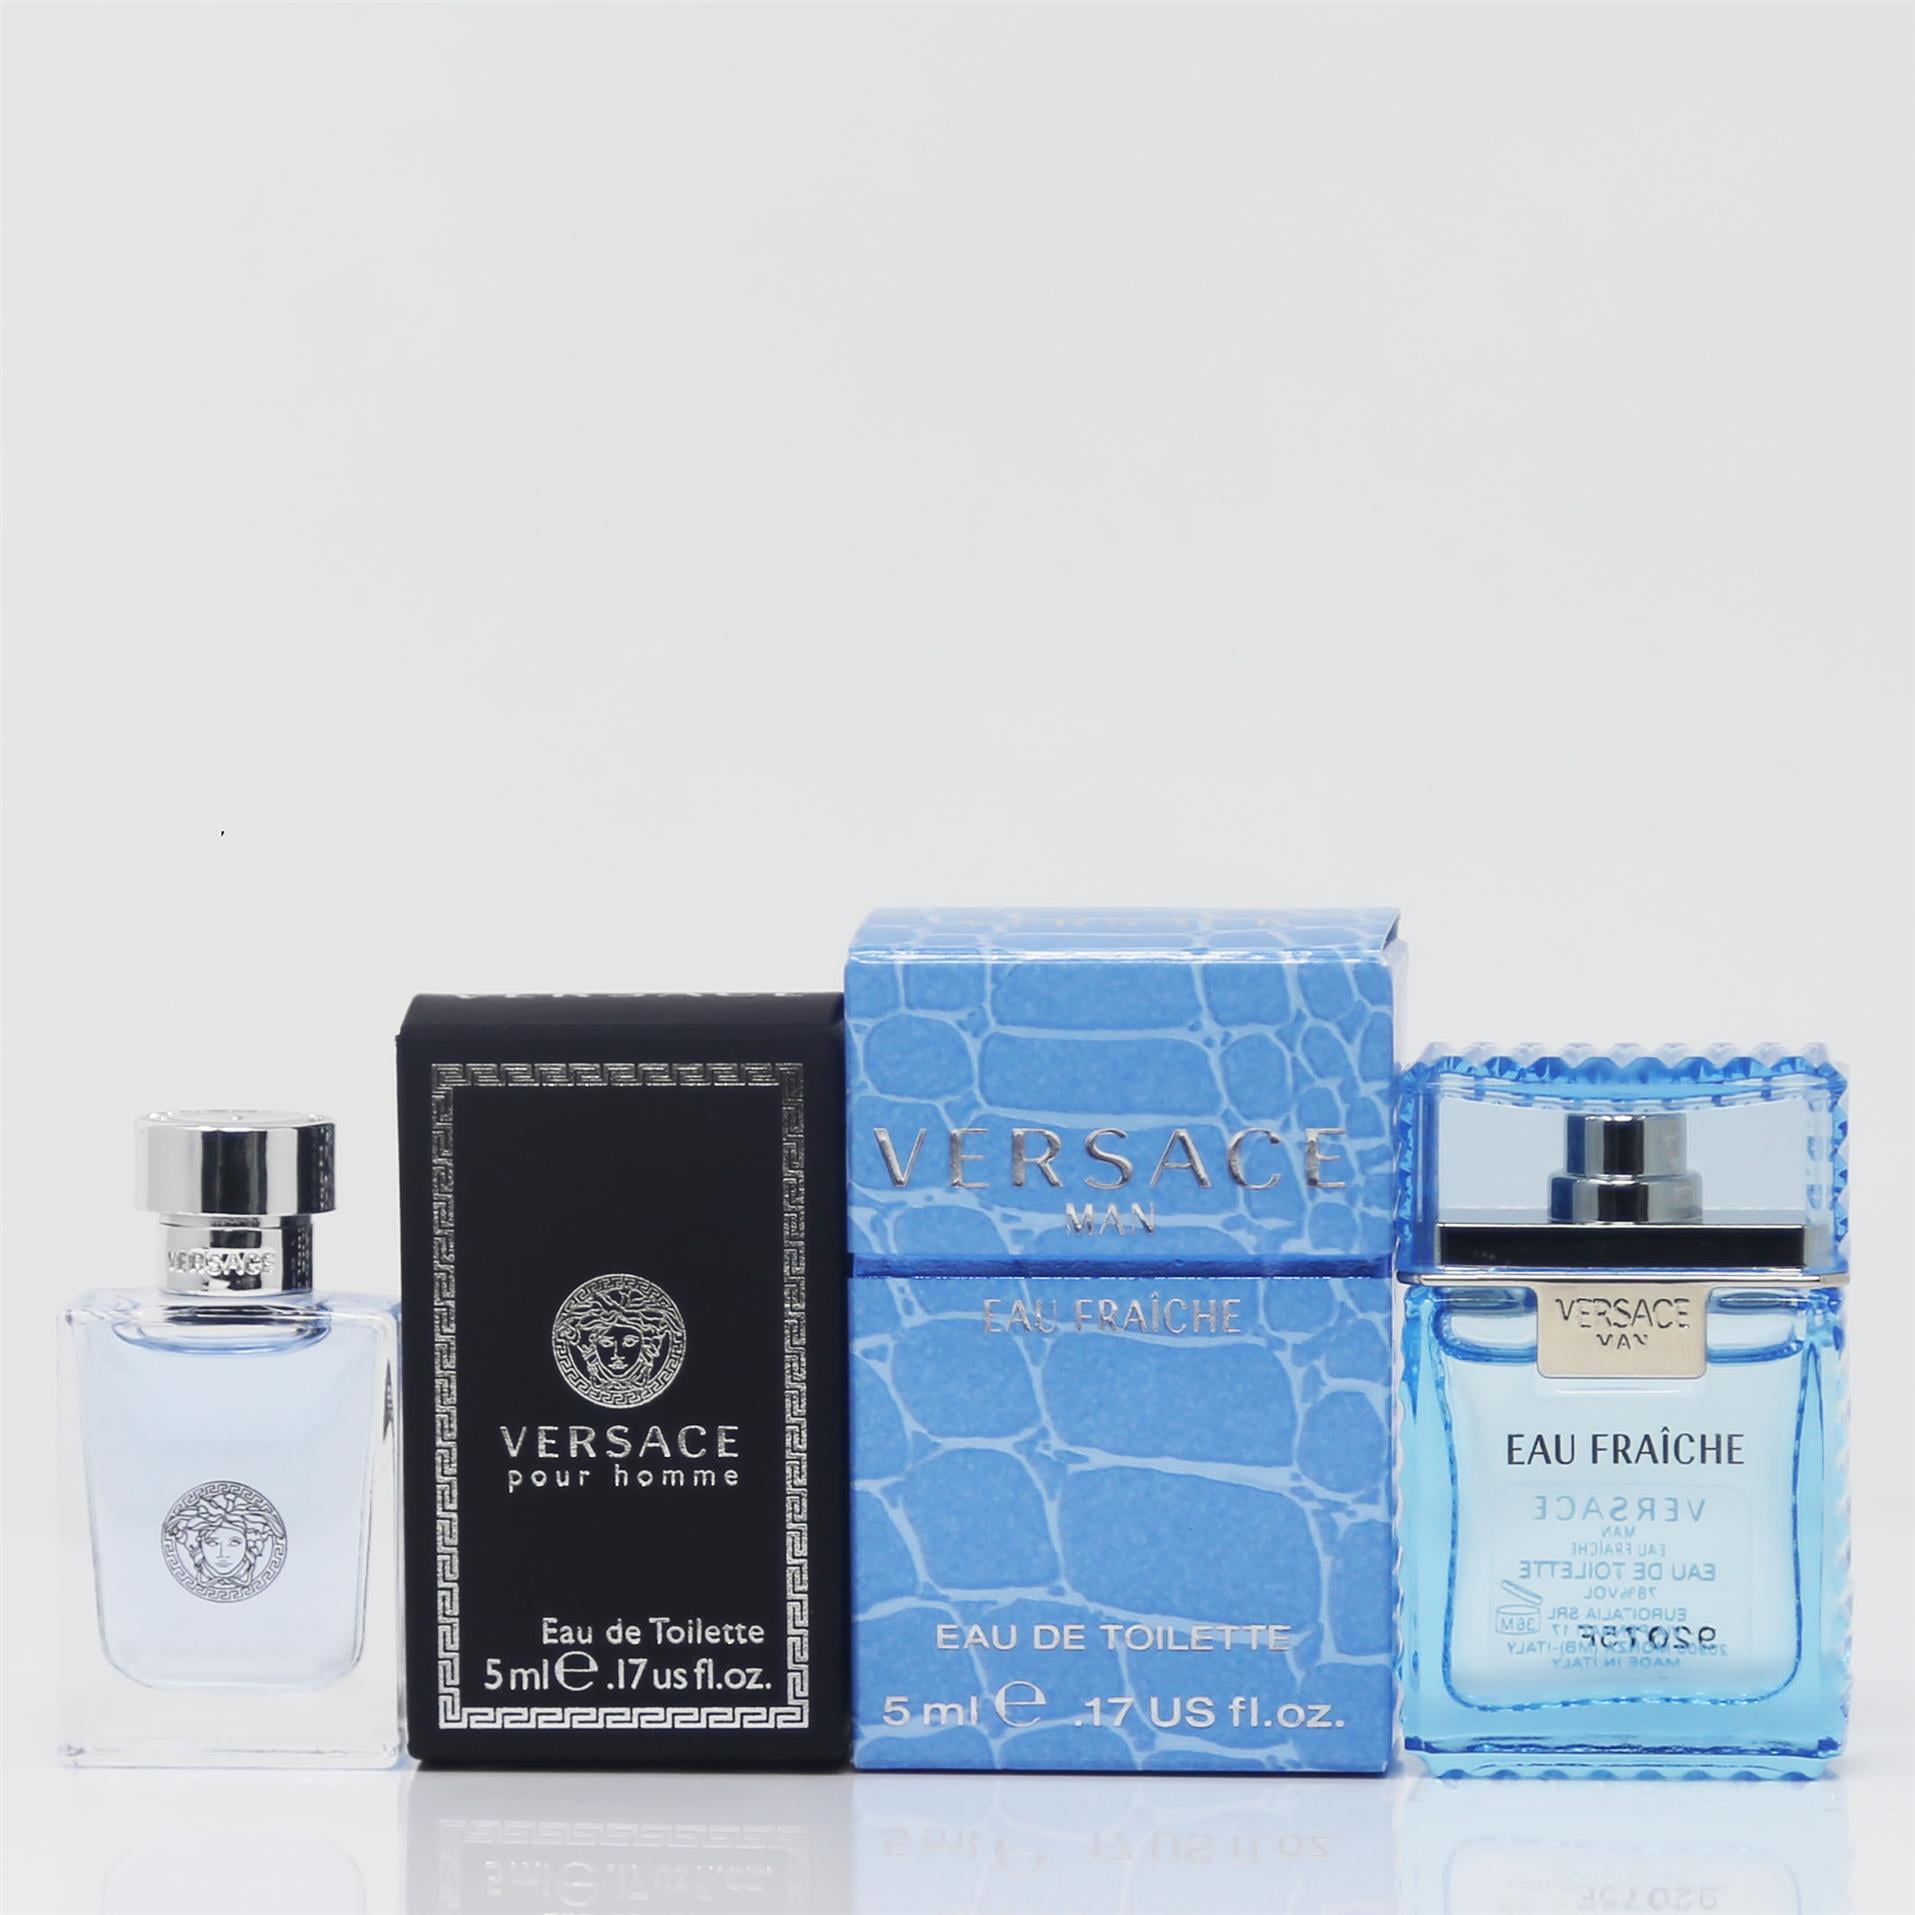 Versace Pour Homme EDT 5ml & Eau Fraiche Eau de Toilette 5ml 2pc Mini Gift Splash Bottle